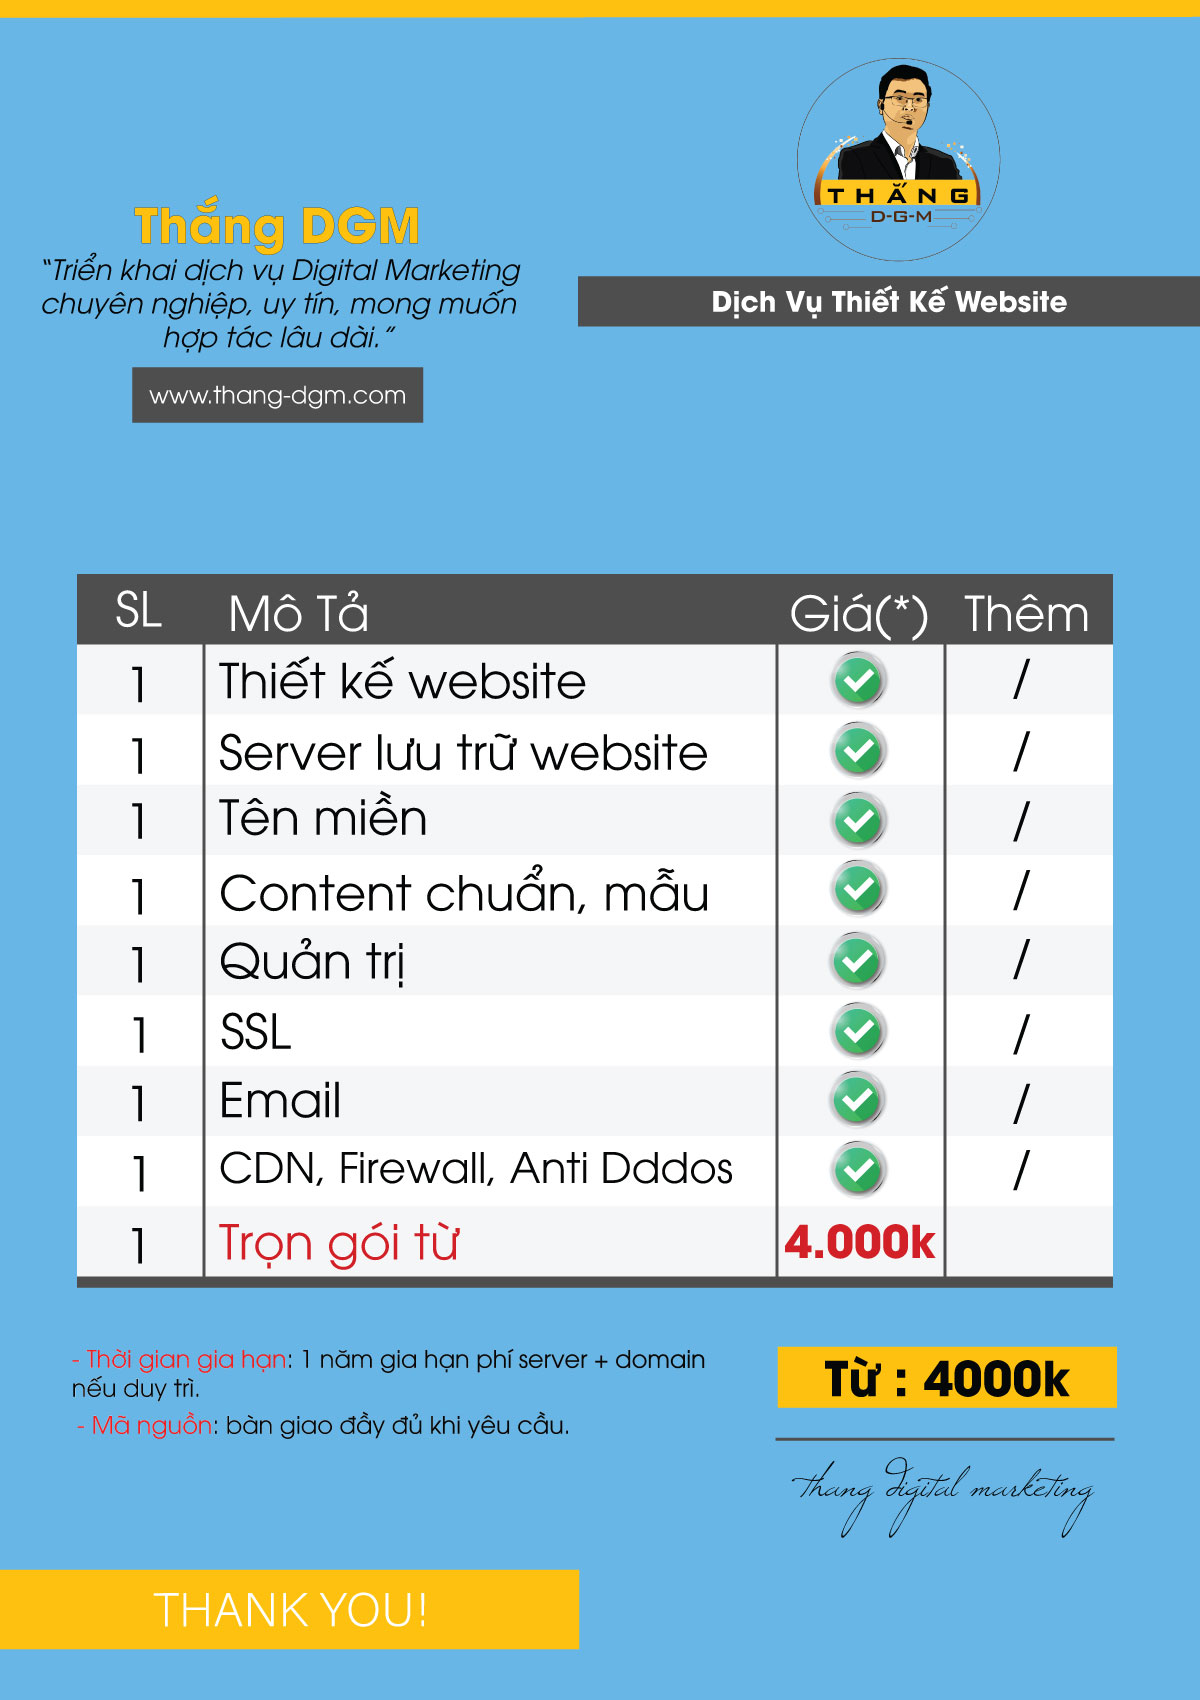 bảng giá dịch vụ thiết kế website trọn gói